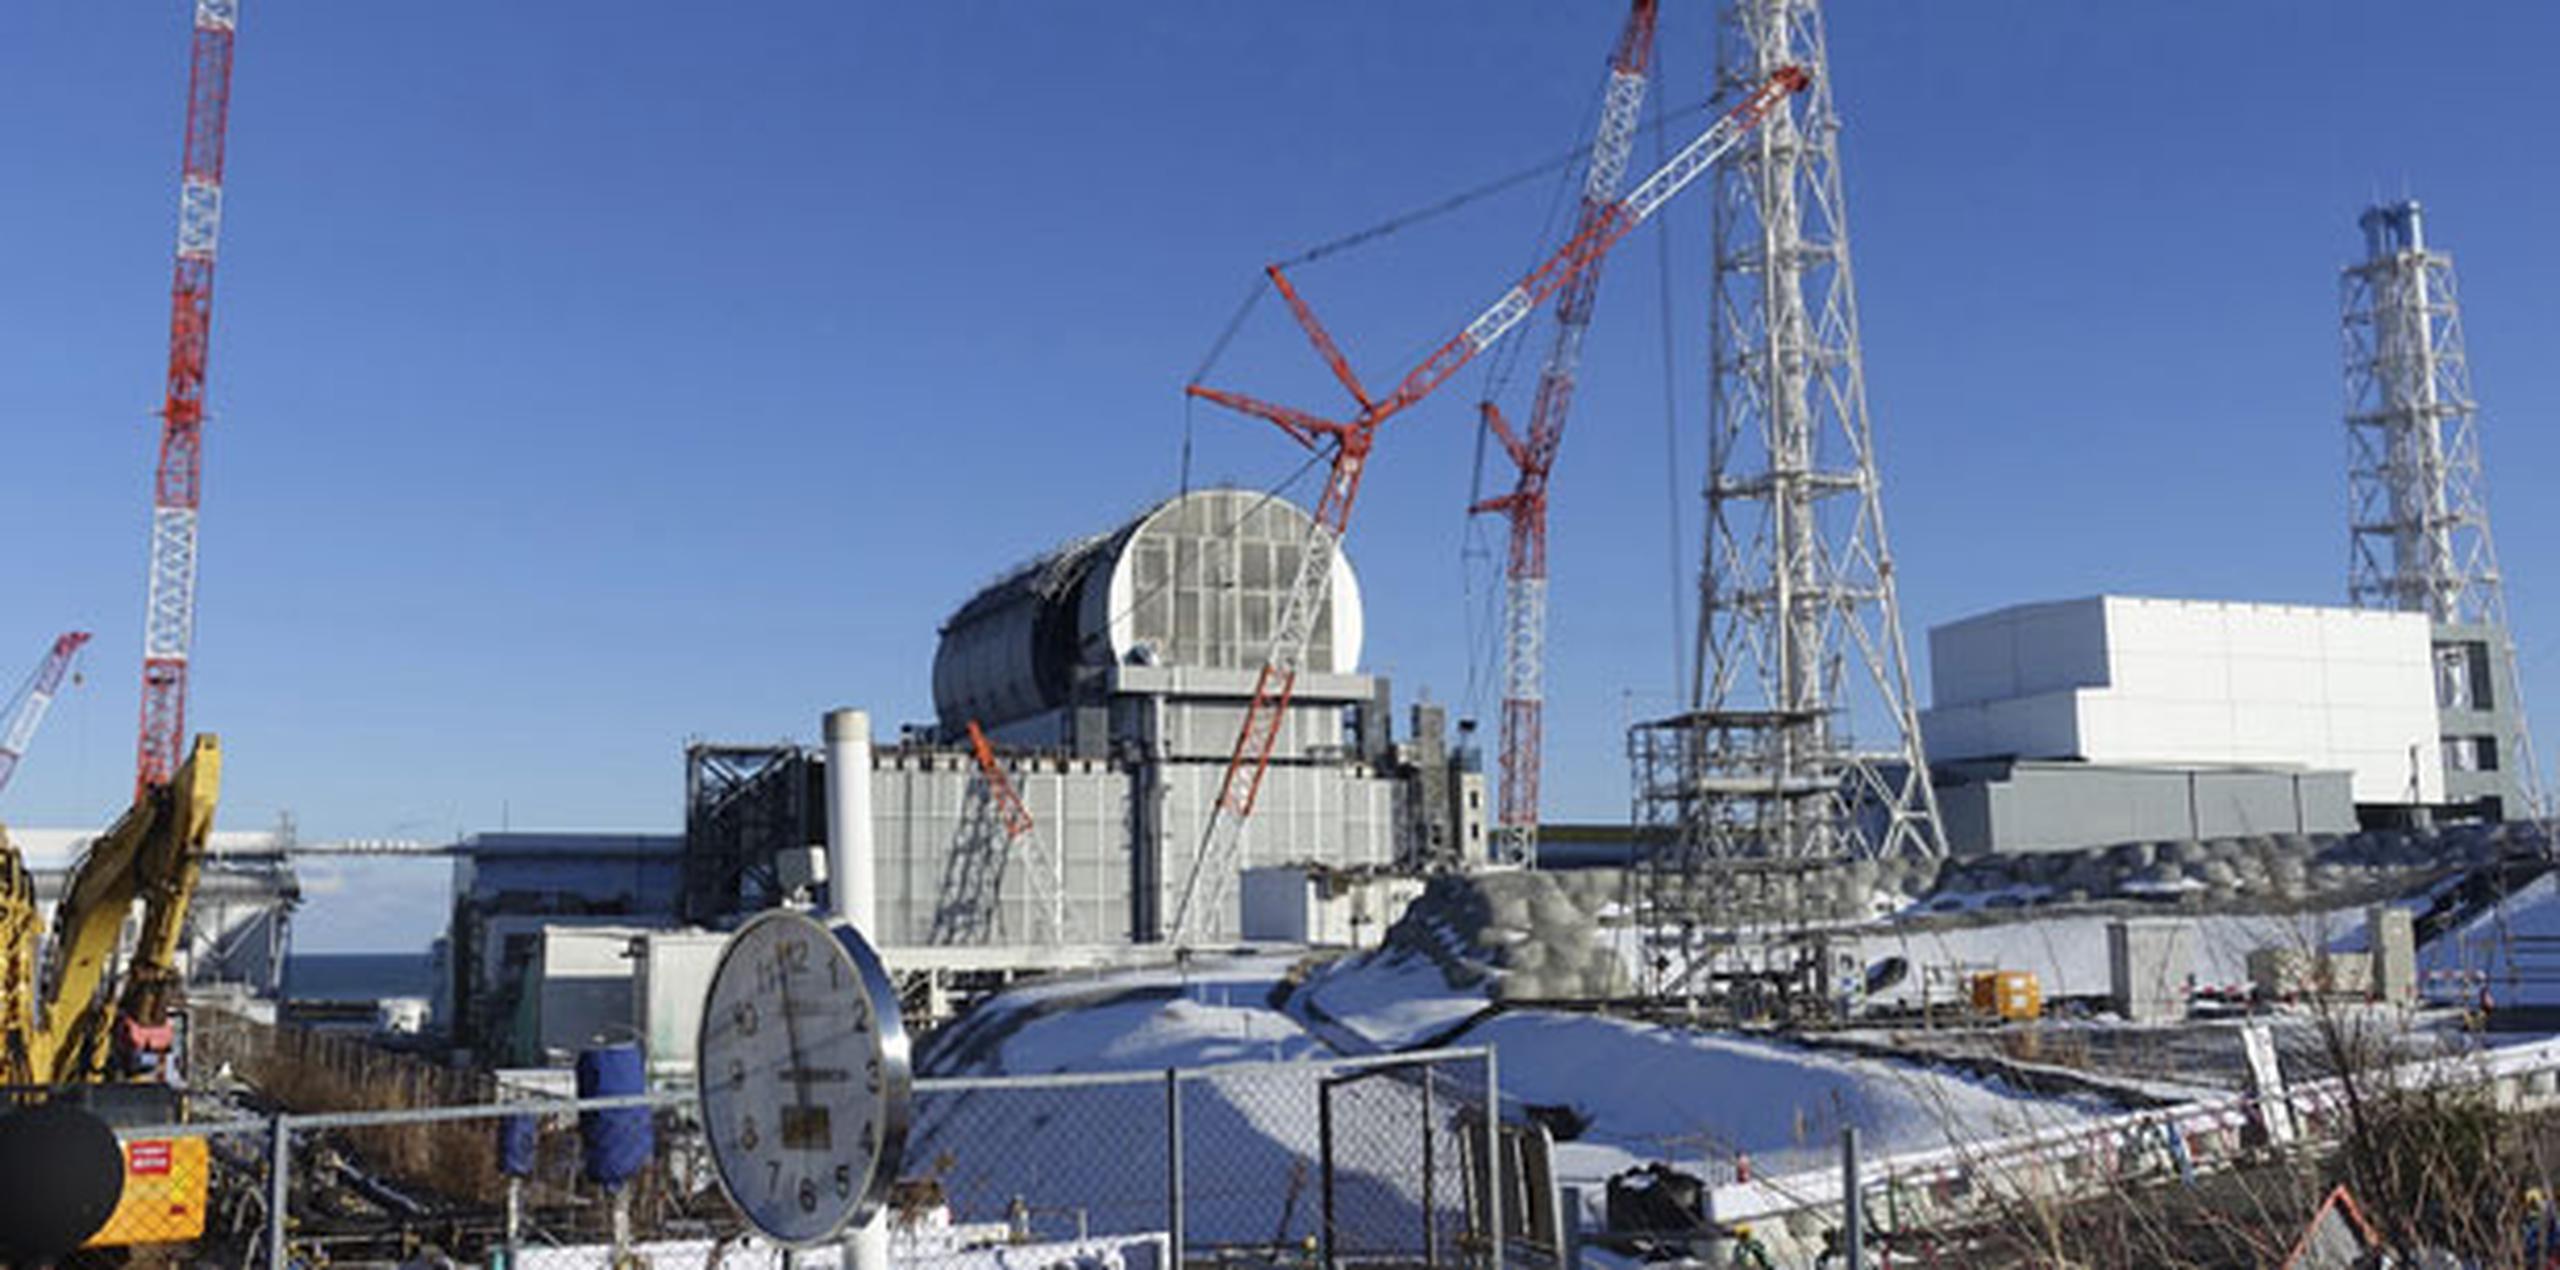 Un enorme tsunami en marzo de 2011 desencadenó fusiones en tres de los reactores de Fukushima Dai-ichi, el peor desastre nuclear desde Chernóbil. (Archivo)